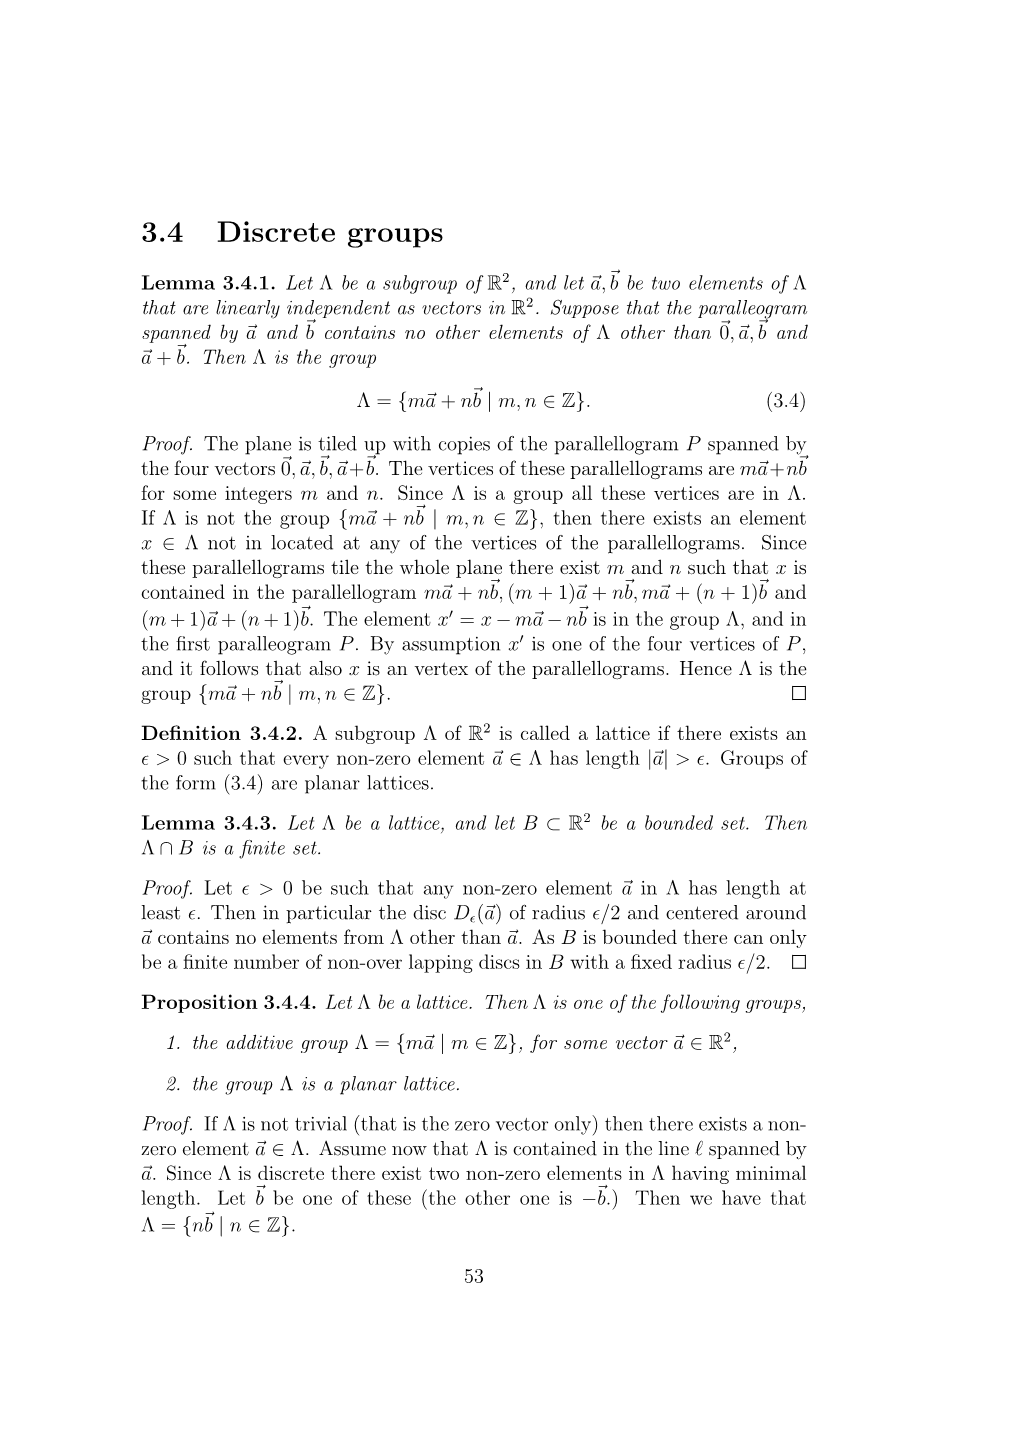 3.4 Discrete Groups